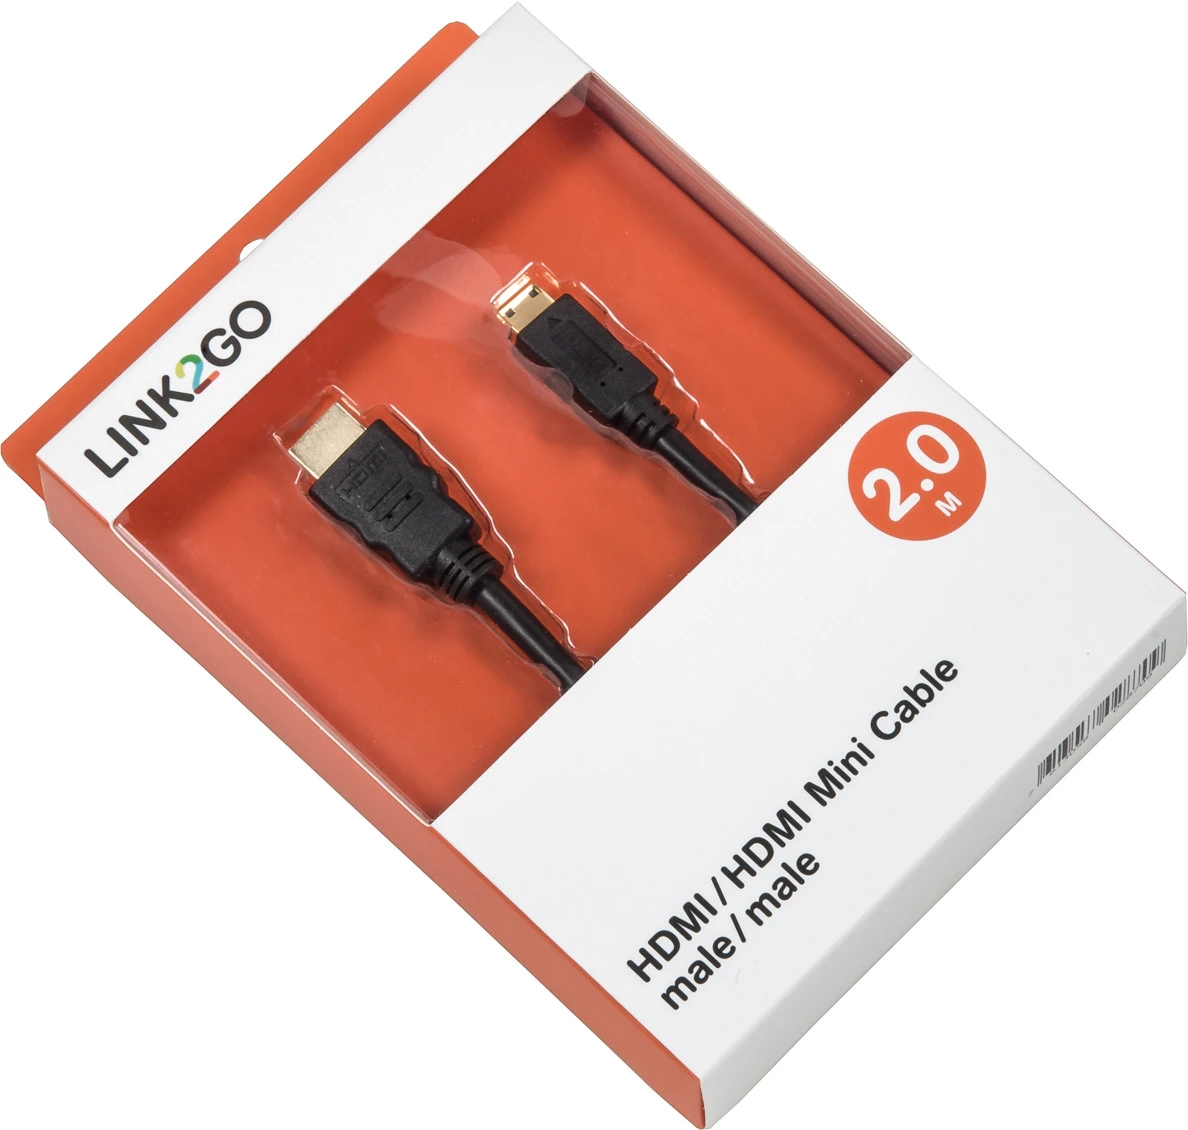 LINK2GO HDMI - HDMI Mini Cable HD4013KBB male/male, 2.0m